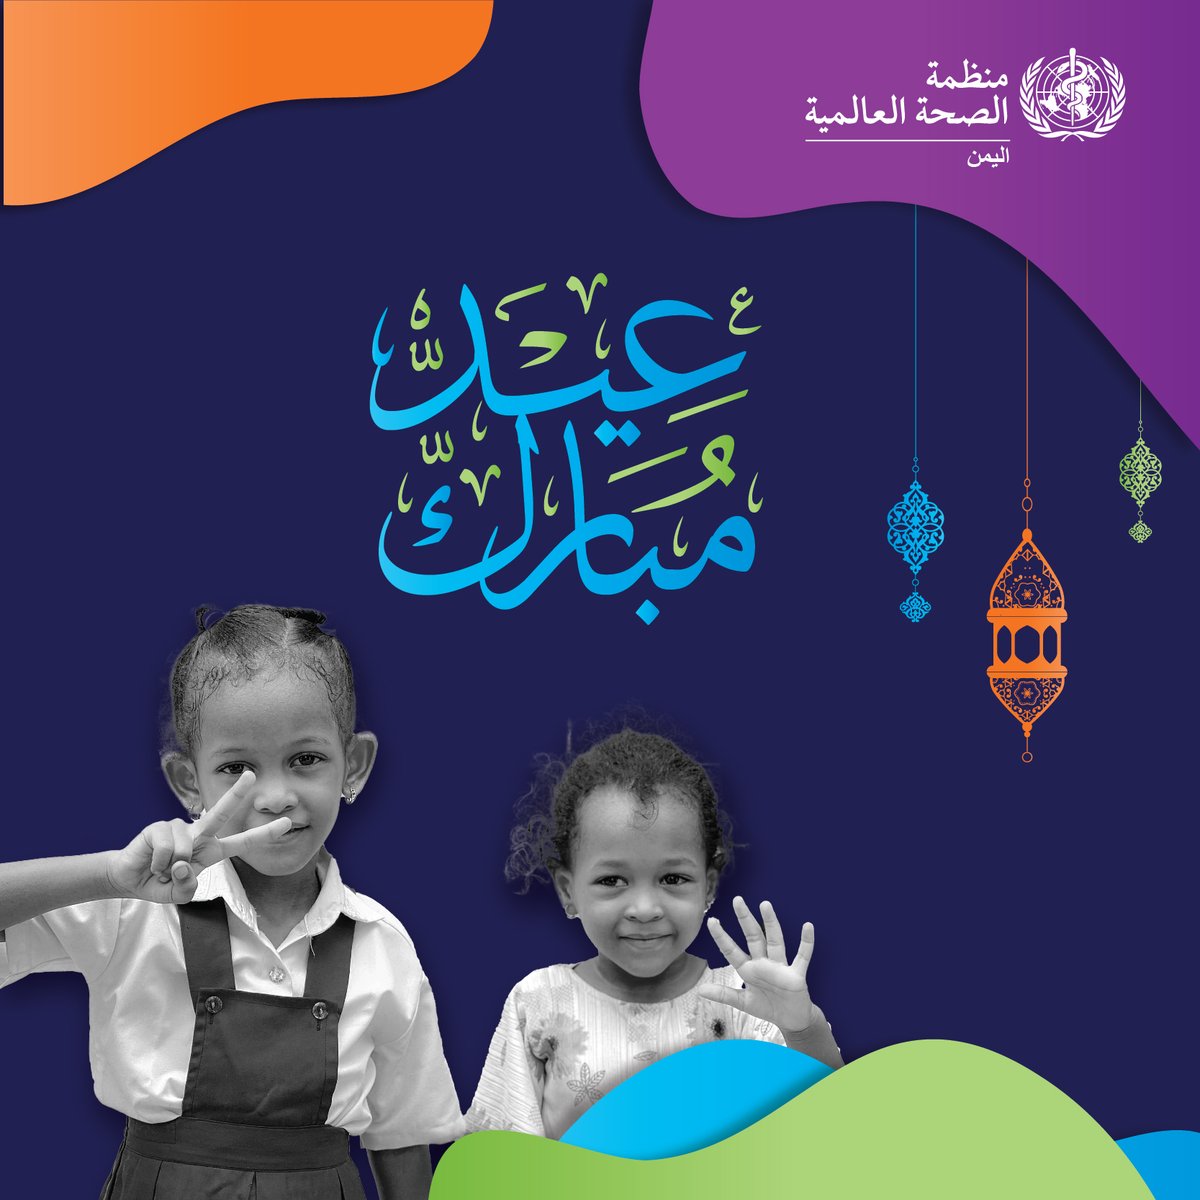 تتمنى لكم منظمة الصحة العالمية في اليمن عيد فطر مبارك مليء بالبهجة والسلام، ودوام الصحة والعافية. دعونا نواصل رحلتنا نحو تحقيق صحة شاملة ومستدامة للجميع. كل عام وأنتم بخير وعيد سعيد!